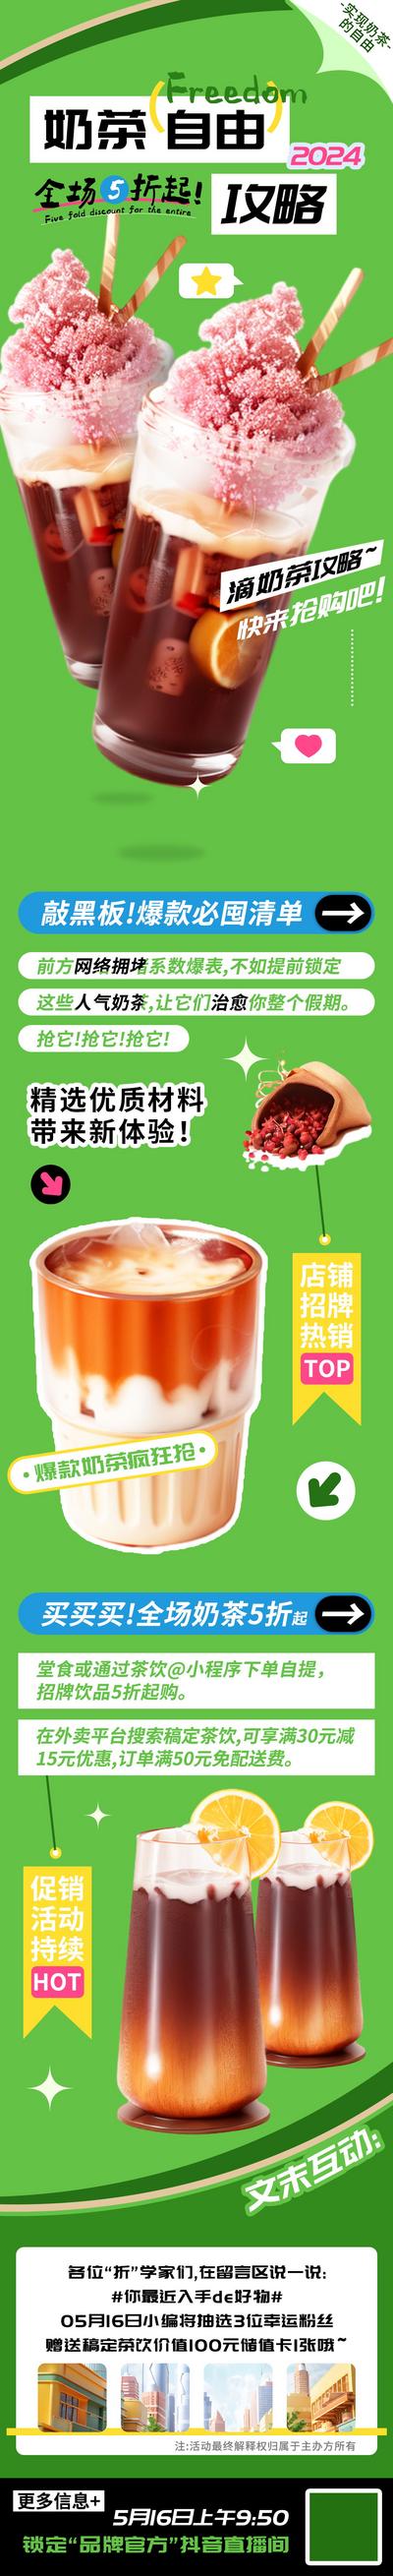 南门网 电商 长图 旅游 汽车 美食 促销 奶茶 自由 攻略 折扣 户外 互联网 餐饮 酒吧